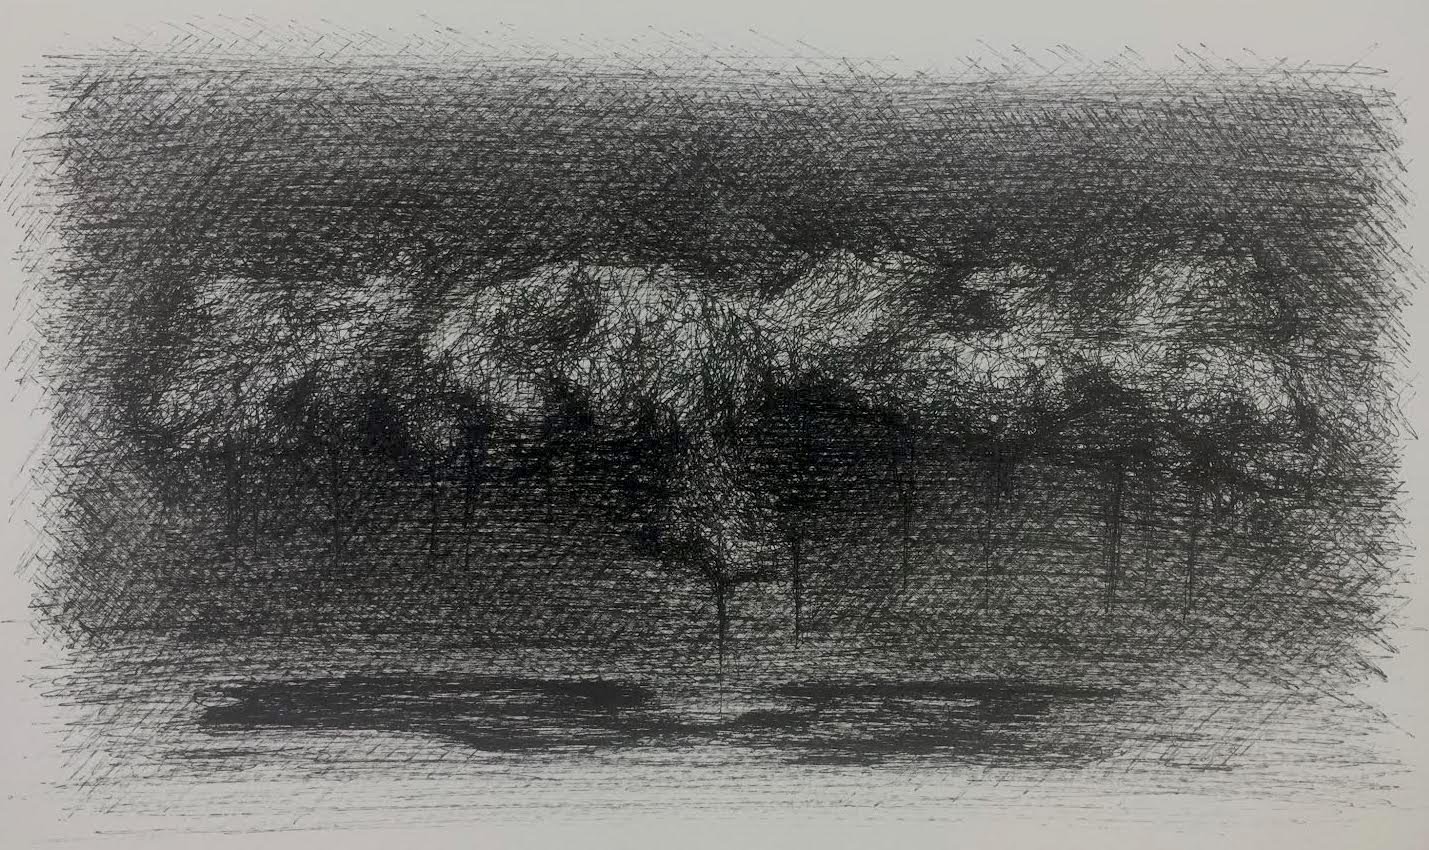   Spanish Moss at Night , Lafayette, Louisiana, 2022  Micron Pen on Paper, 11 x 14” 